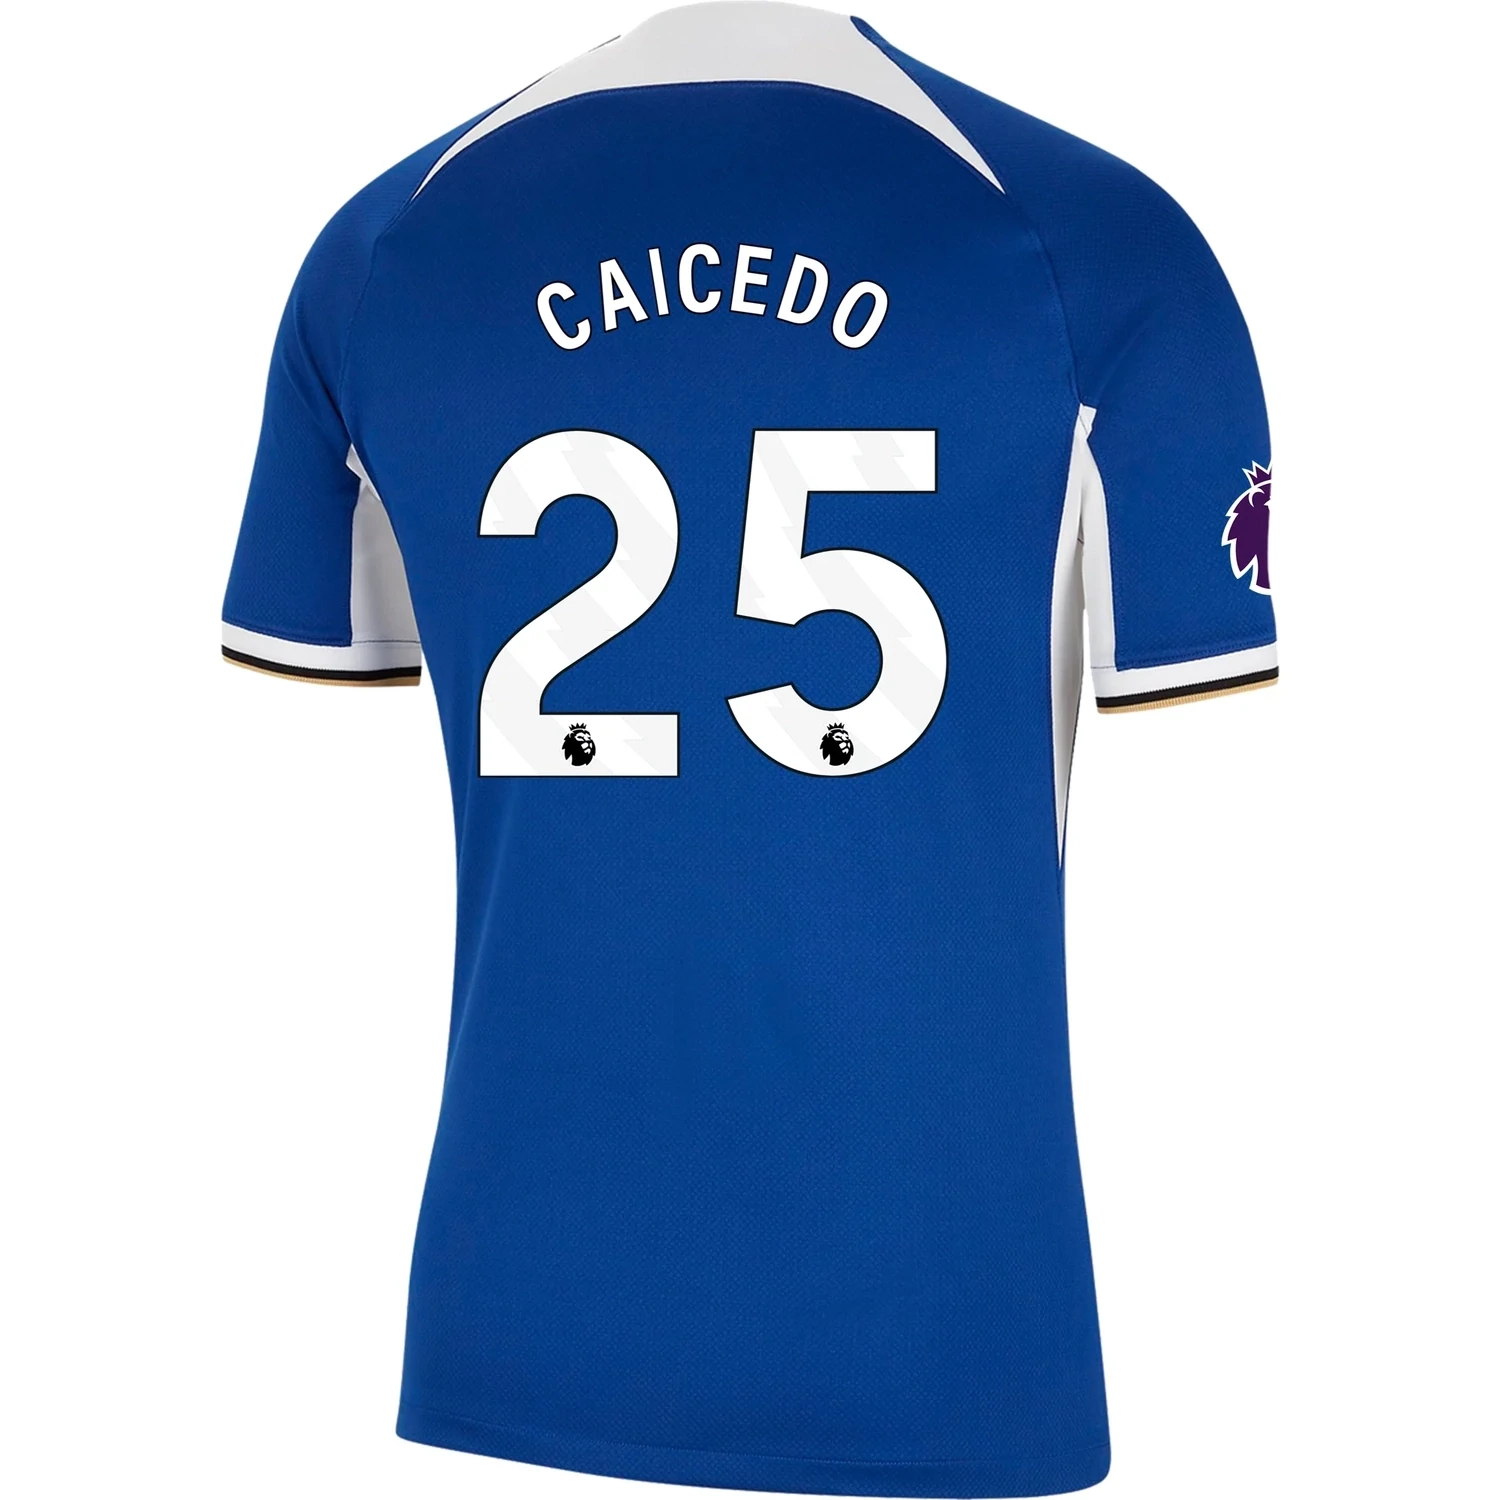 Moises Caicedo #25 Chelsea Home Soccer Jersey 23-24